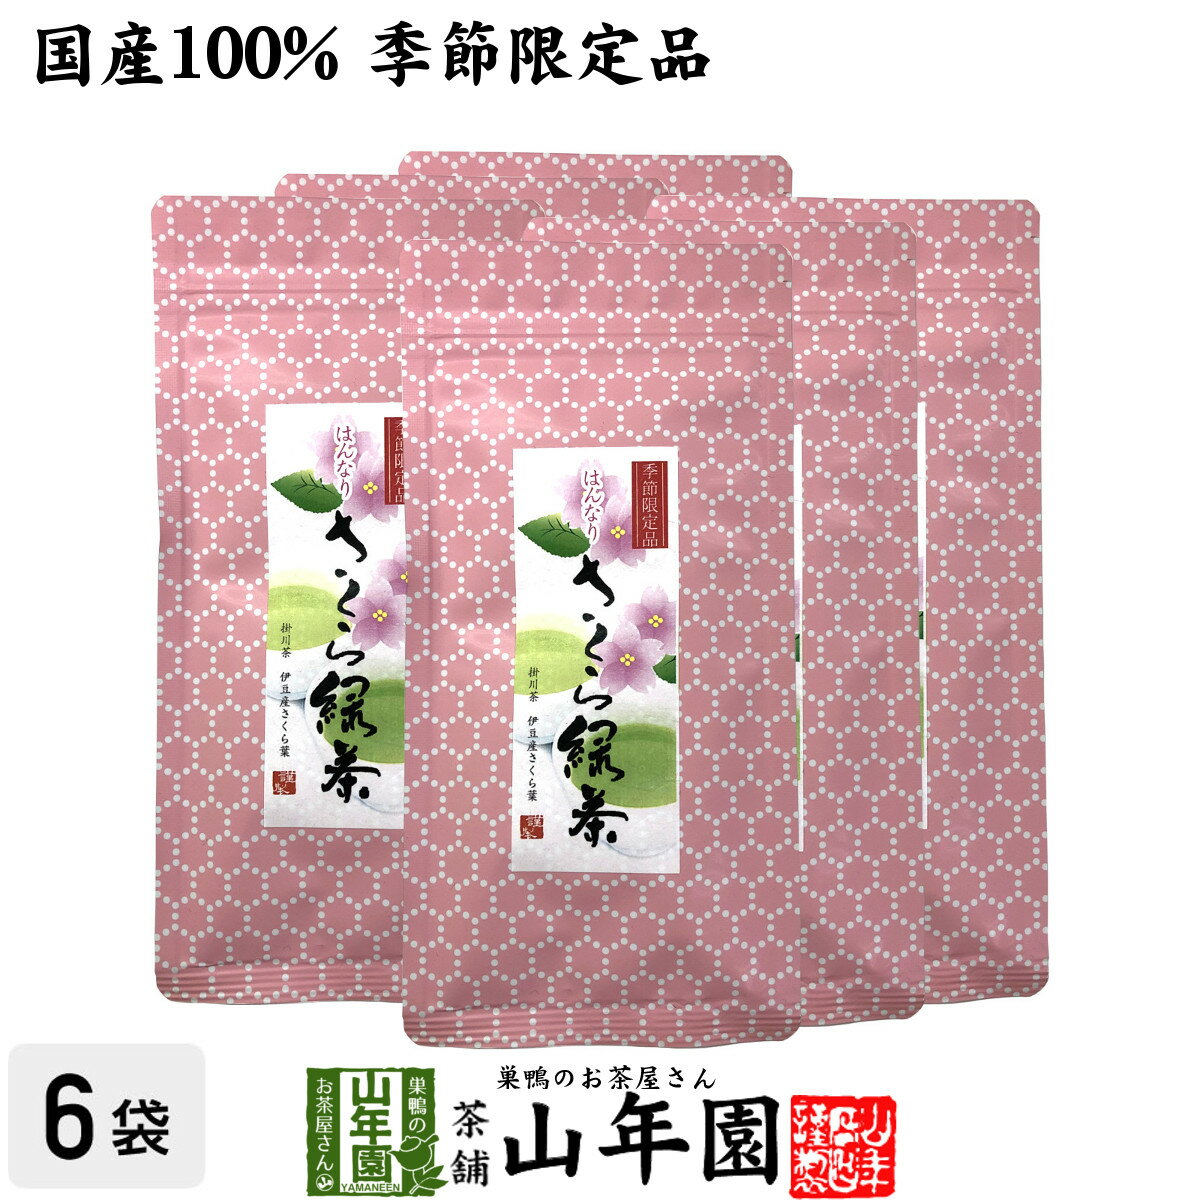 【国産100%】さくら緑茶 50g×6袋セット送料無料 掛川